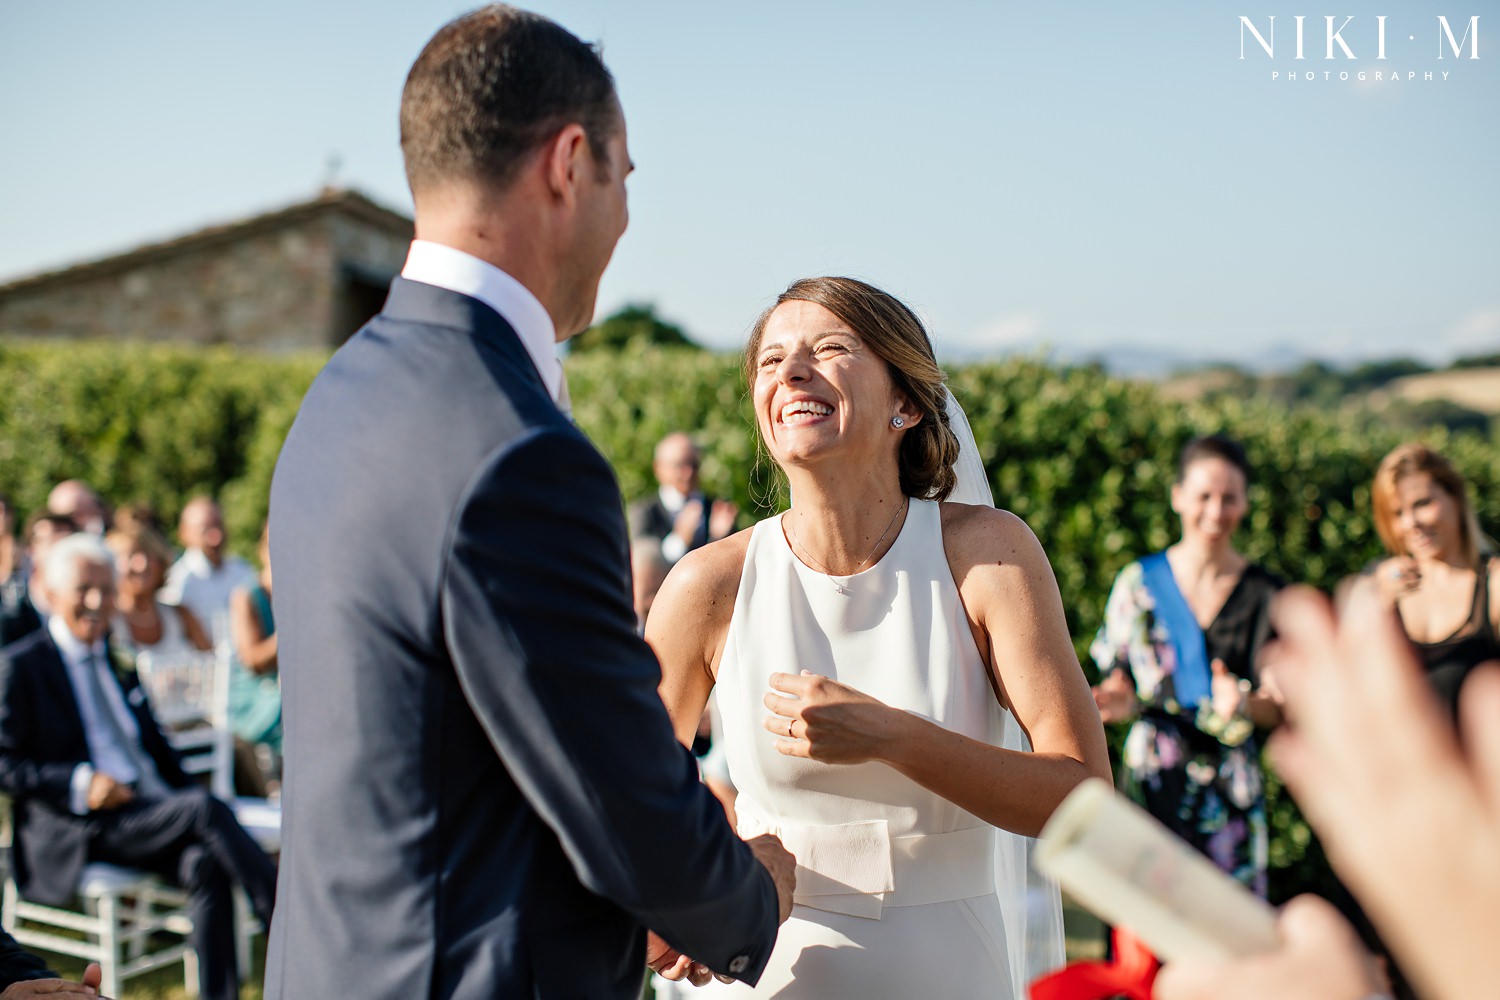 Tuscany wedding ceremony at Villa Ricrio in Italy